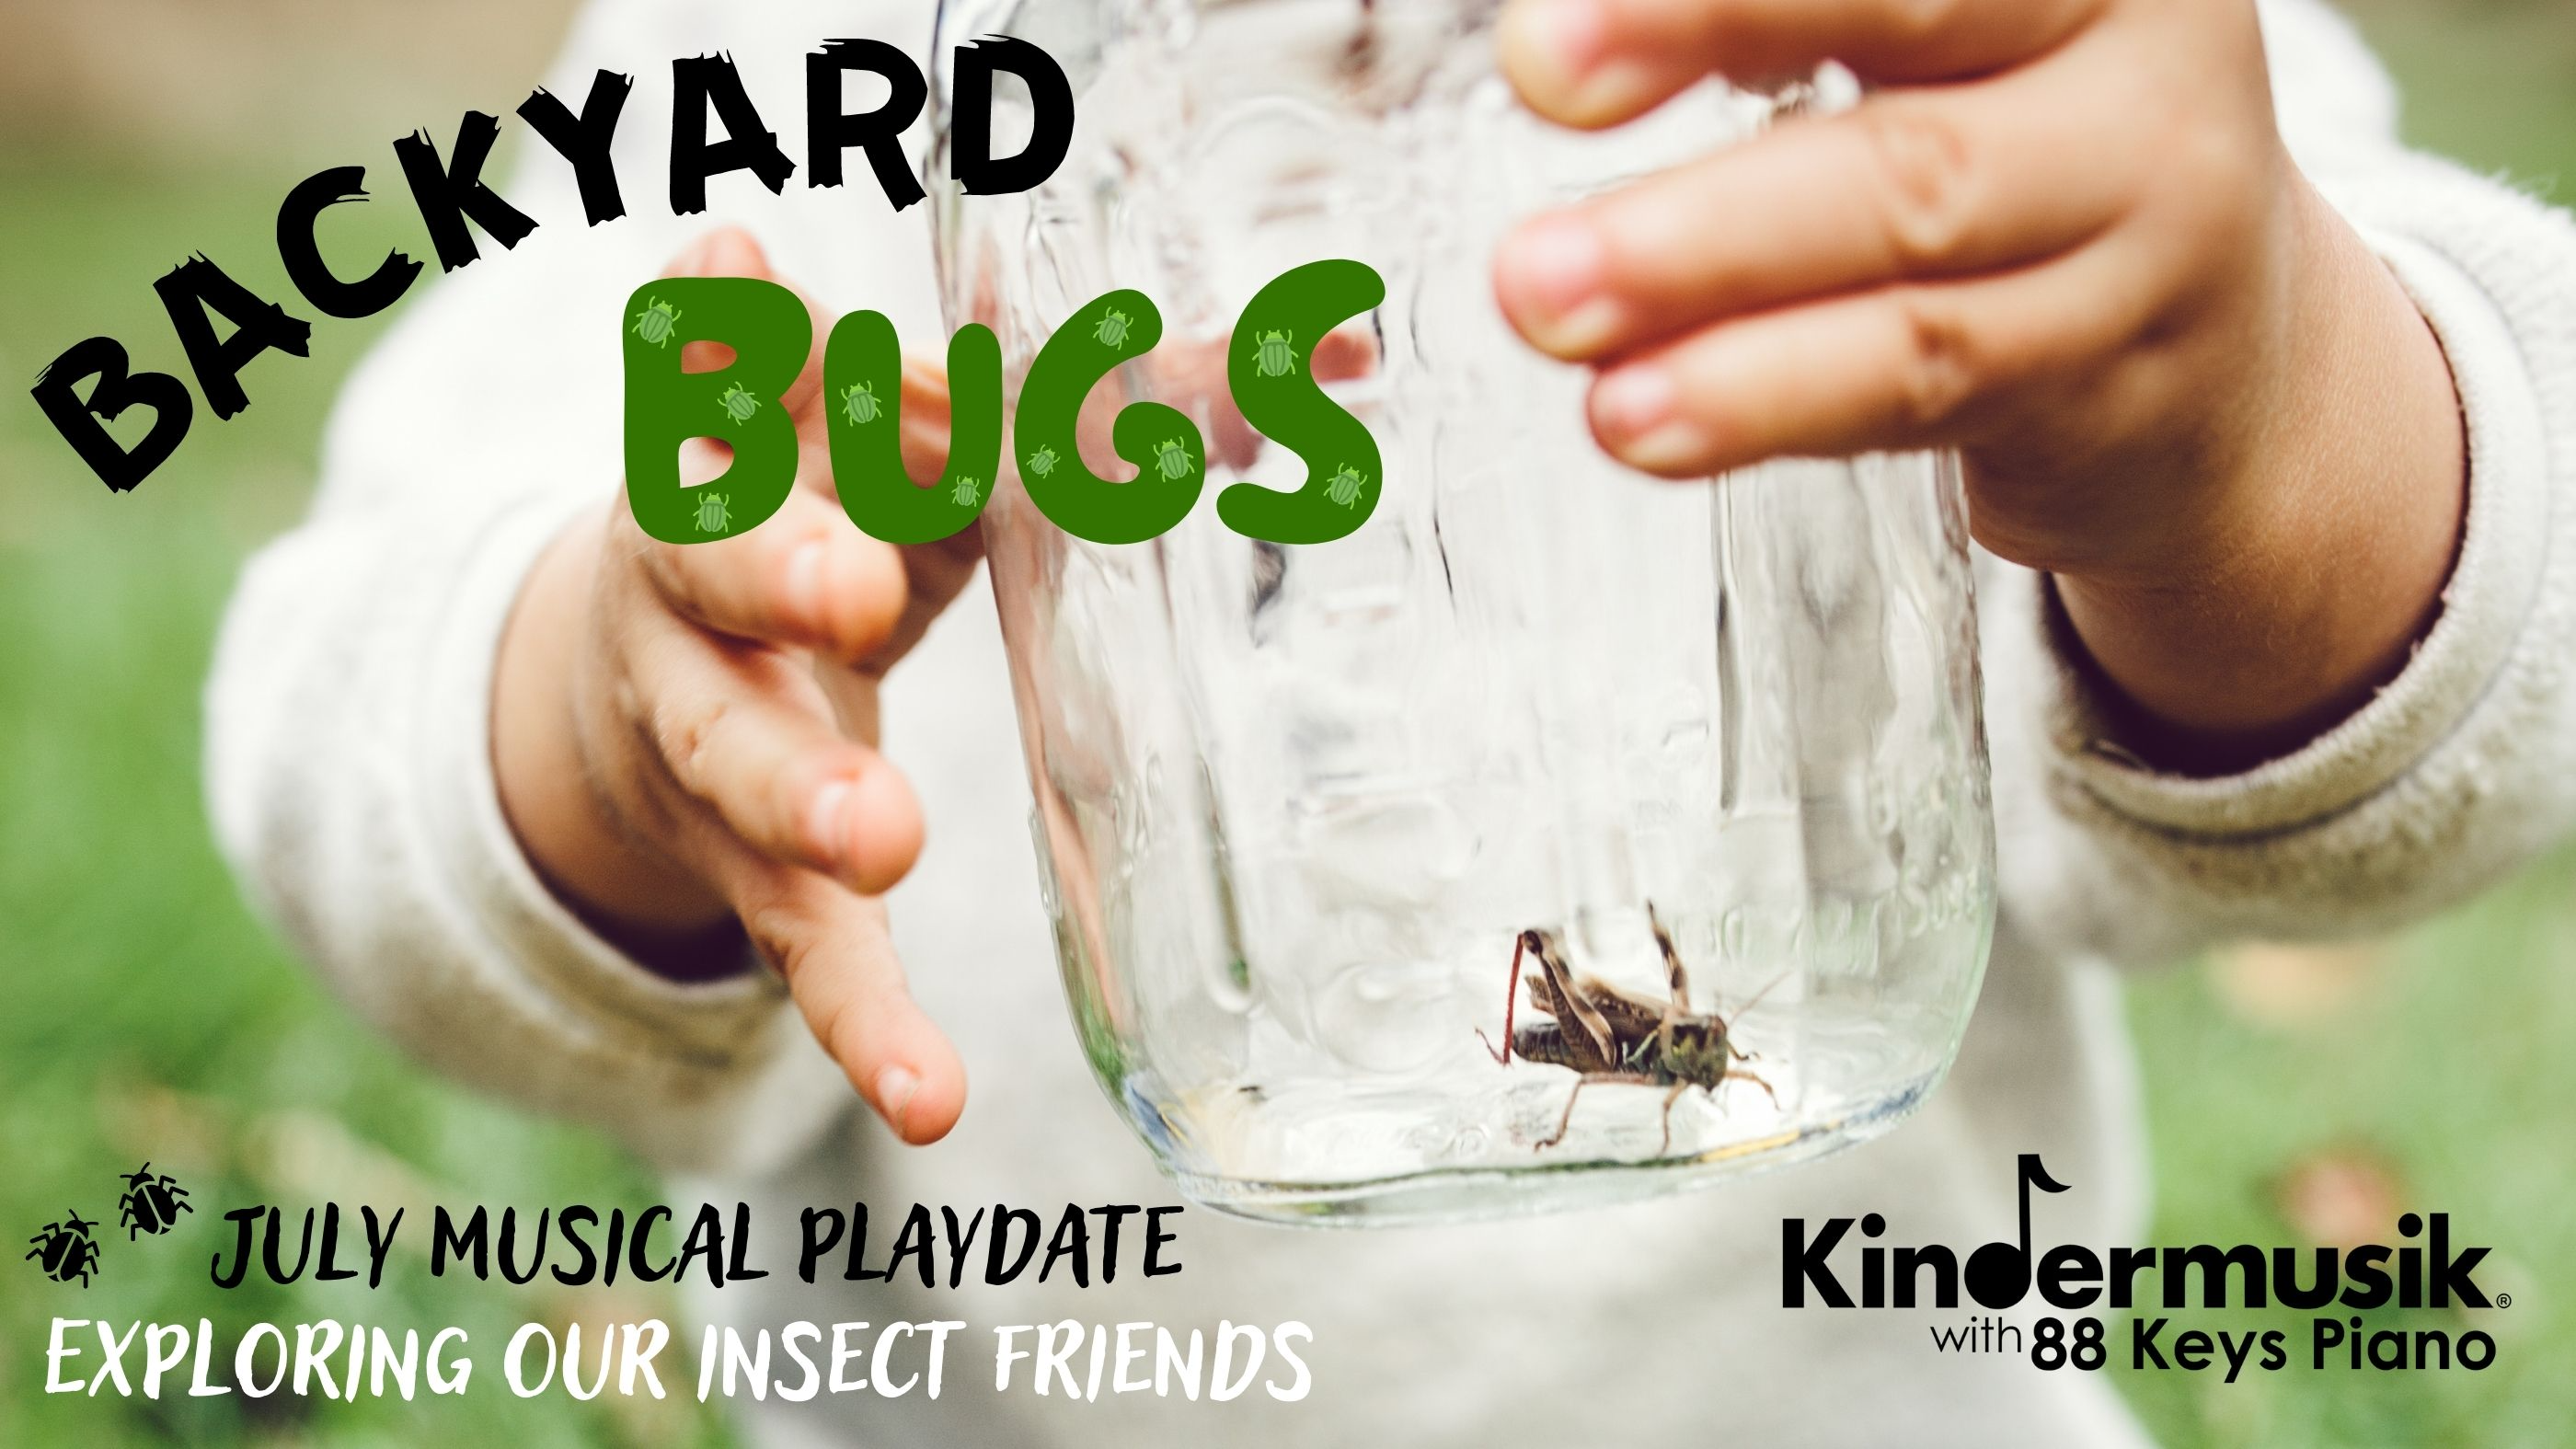 July Playdate: Backyard Bugs!